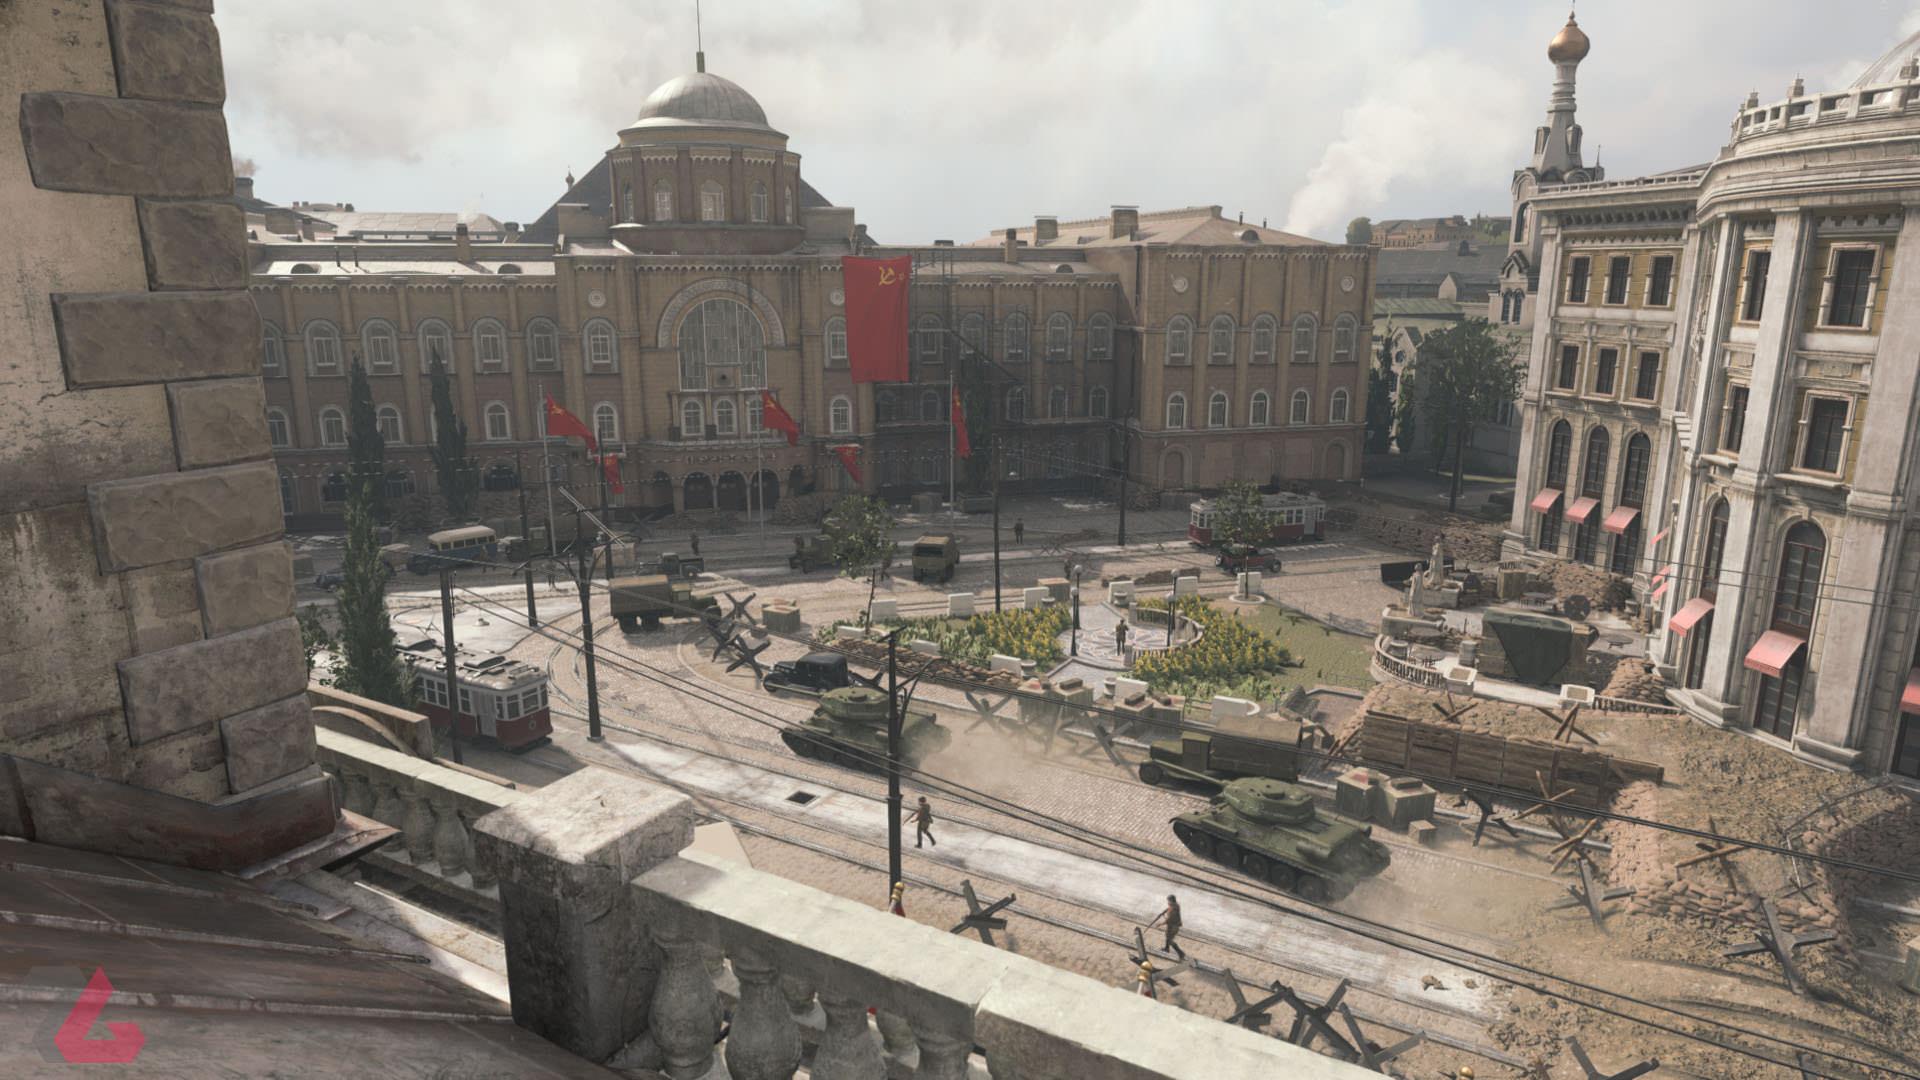 شهر استالینگراد در بازی Call of Duty: Vanguard (کال آو دیوتی ونگارد) پلی استیشن